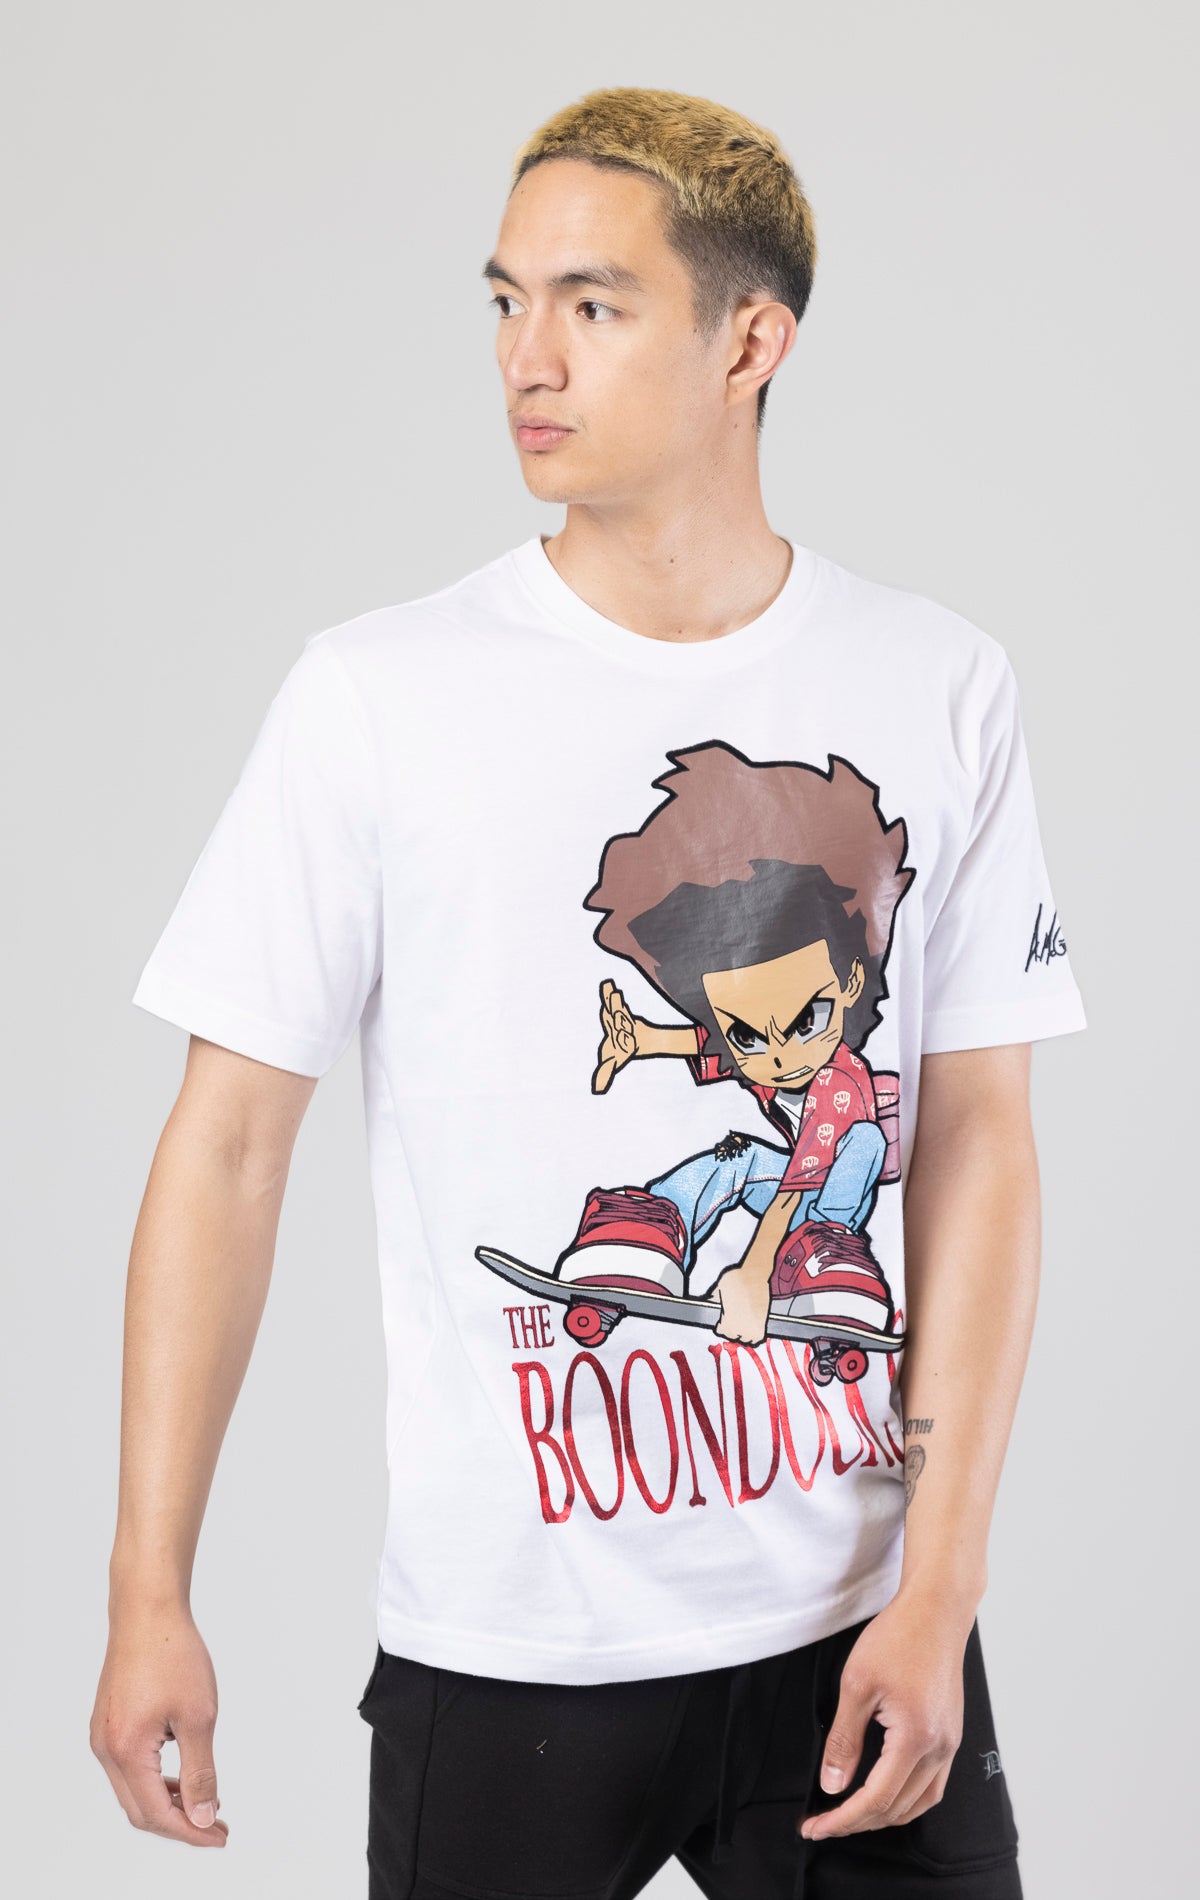 Skate jump Boondocks avatar white graphic t-shirt